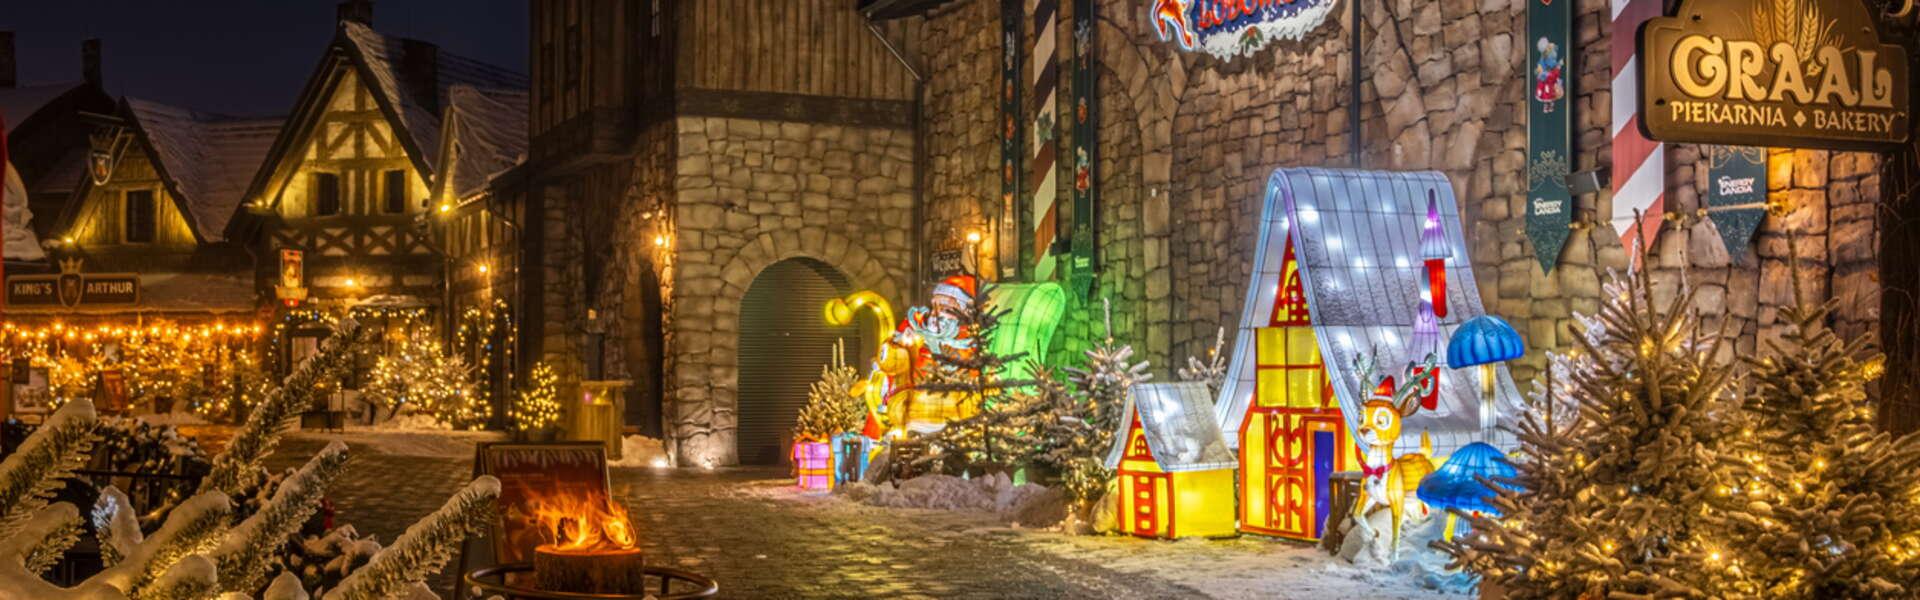 Kamienny budynek lodowiska przed którym stoją oświetlone dekoracje świąteczne, renifer, domek, Święty Mikołaj w parku rozrywki Energylandia podczas Winter Kingdom